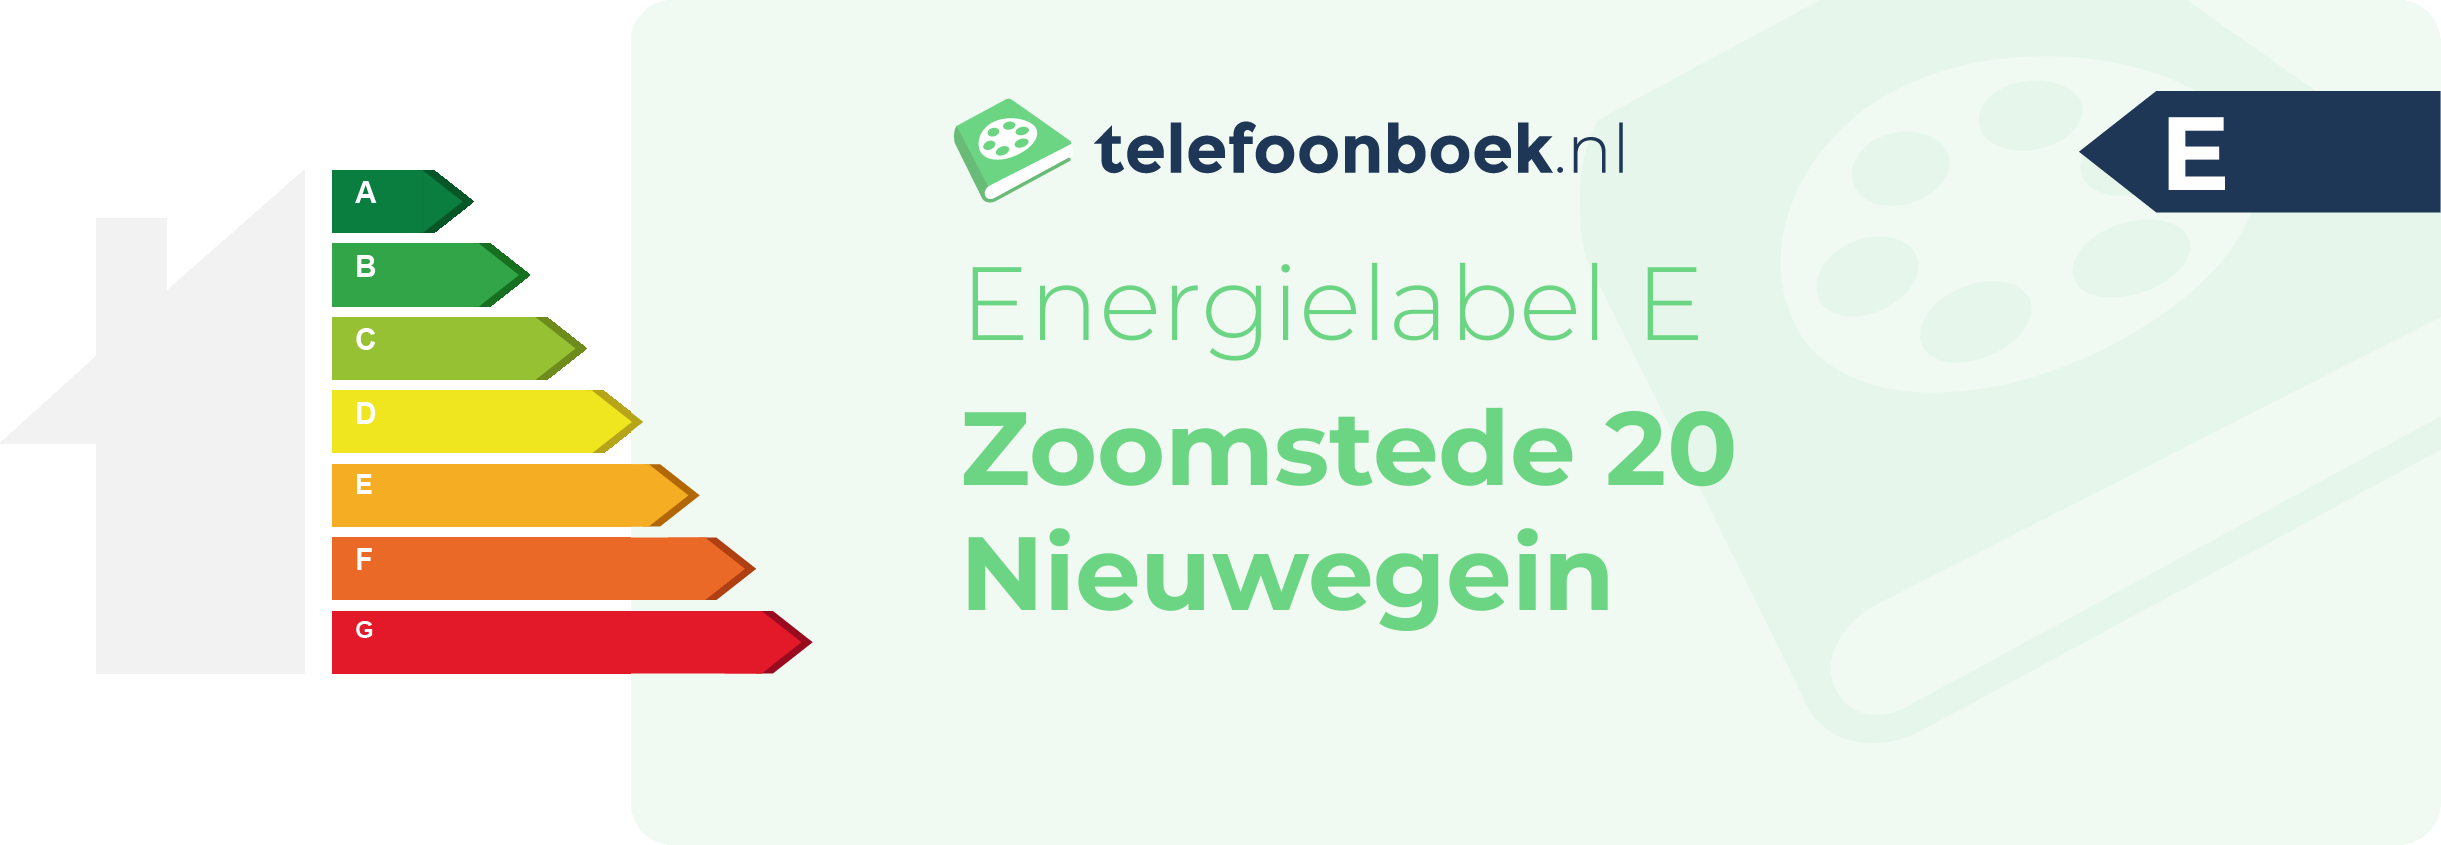 Energielabel Zoomstede 20 Nieuwegein